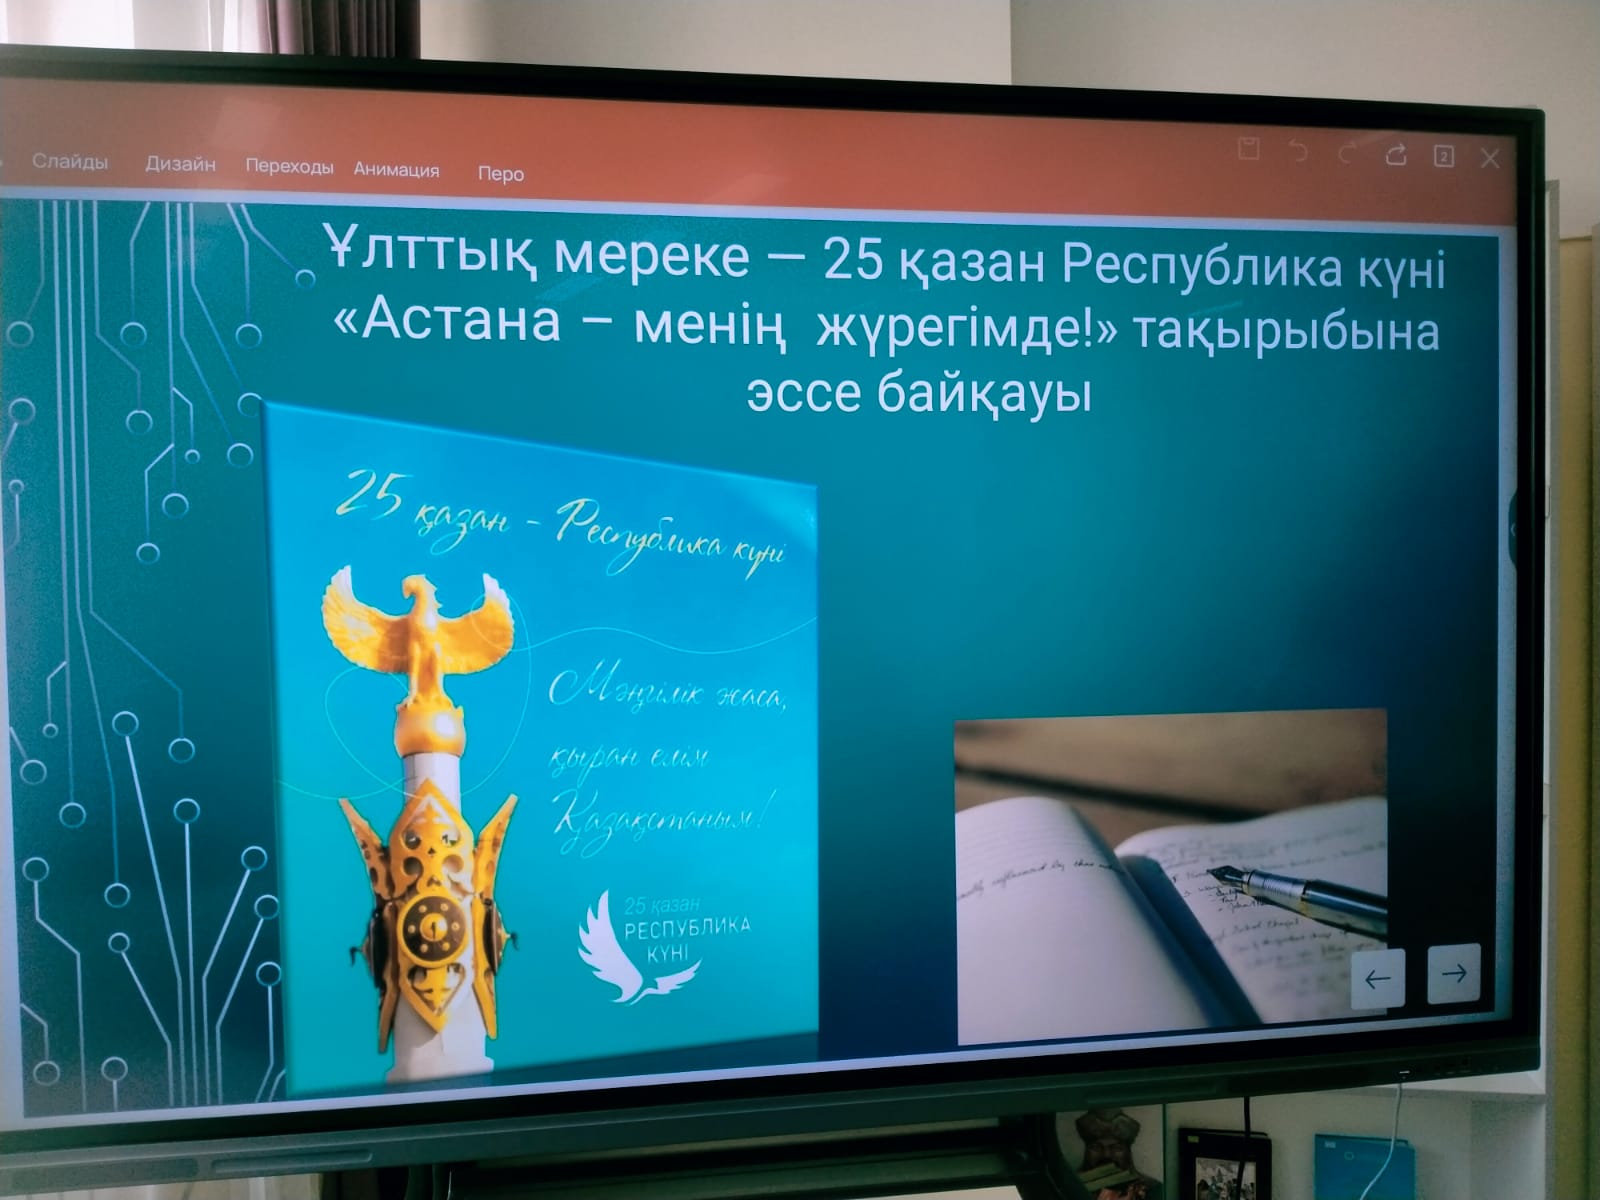 «Астана – менің жүрегімде!» тақырыбында эссе байқауы